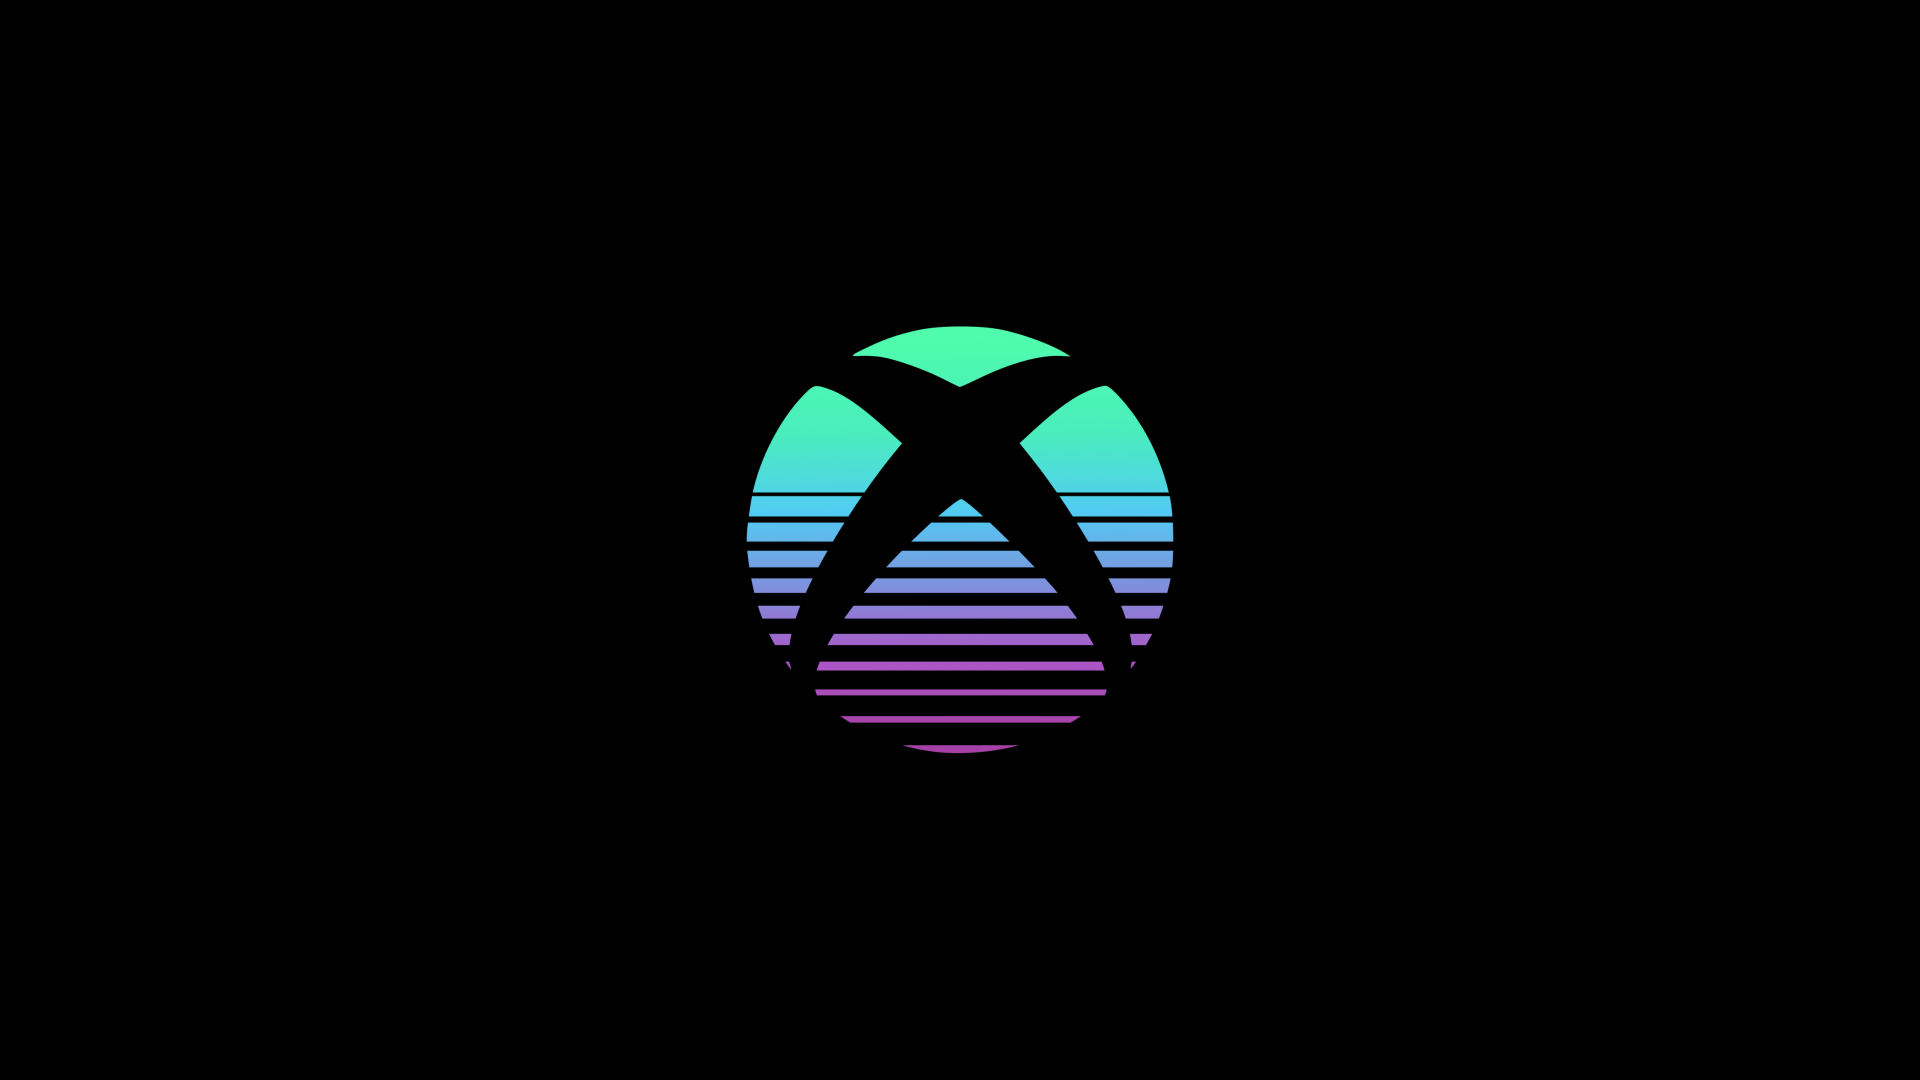 Hình nền Xbox 4K: Cùng tận hưởng những hình nền độc đáo và đẹp mắt của Xbox 4K và trải nghiệm cảm giác sống trong thế giới game như thật. Với độ phân giải cao, màu sắc sống động, các game thủ sẽ tận hưởng những hình nền độc đáo và đẹp mắt đưa mình đến với những thế giới trò chơi hấp dẫn và kịch tính. Hãy bật x-box của mình lên để khám phá những điều thú vị.